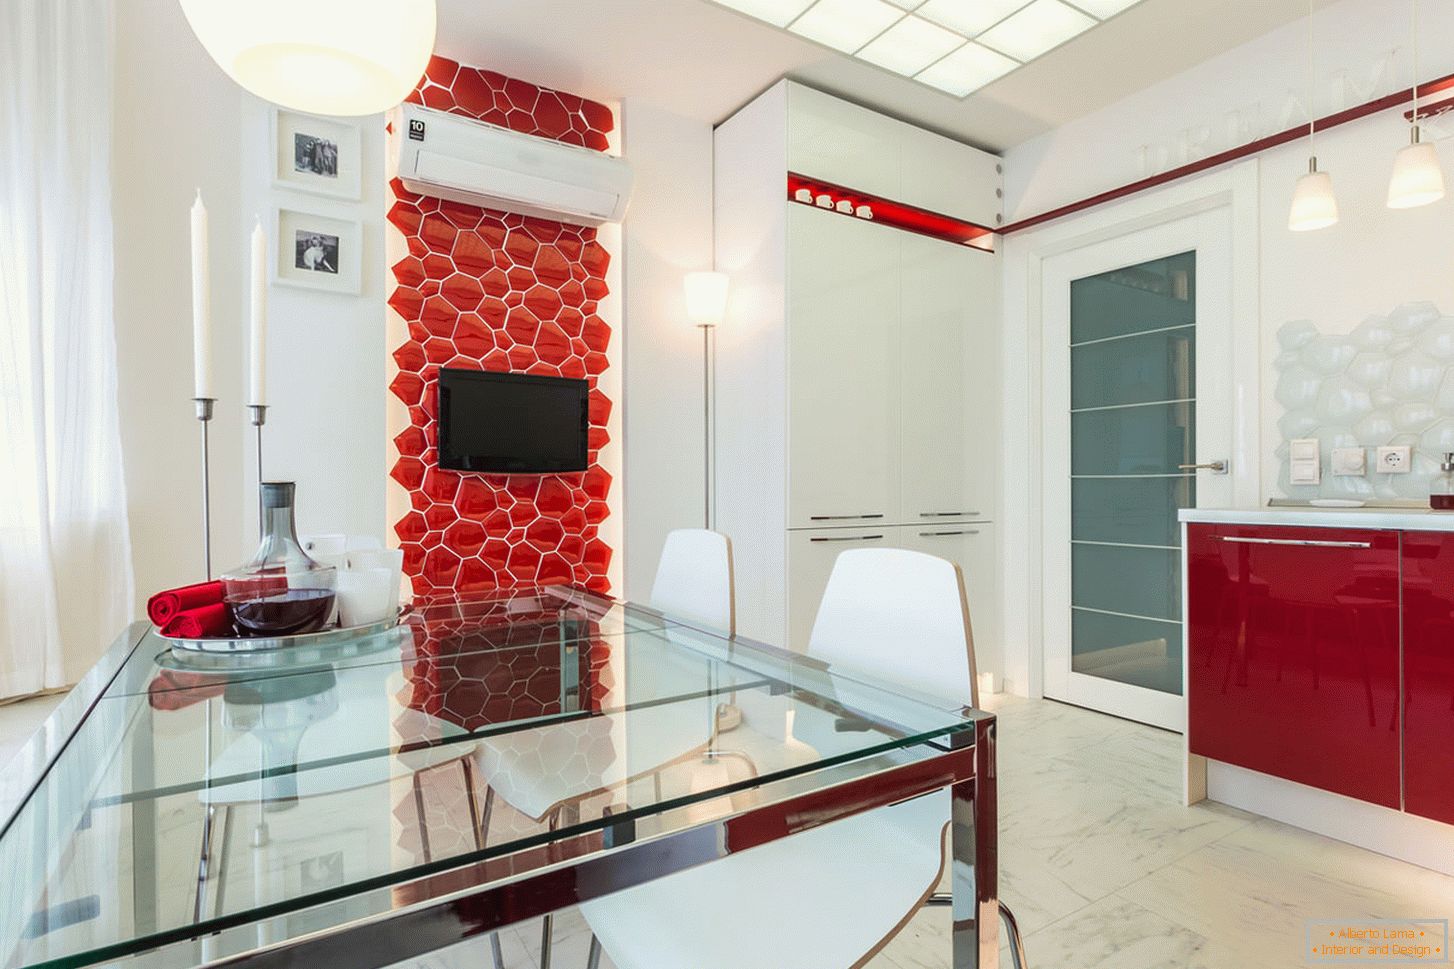 Cozinha interior chique em cores brancas e vermelhas